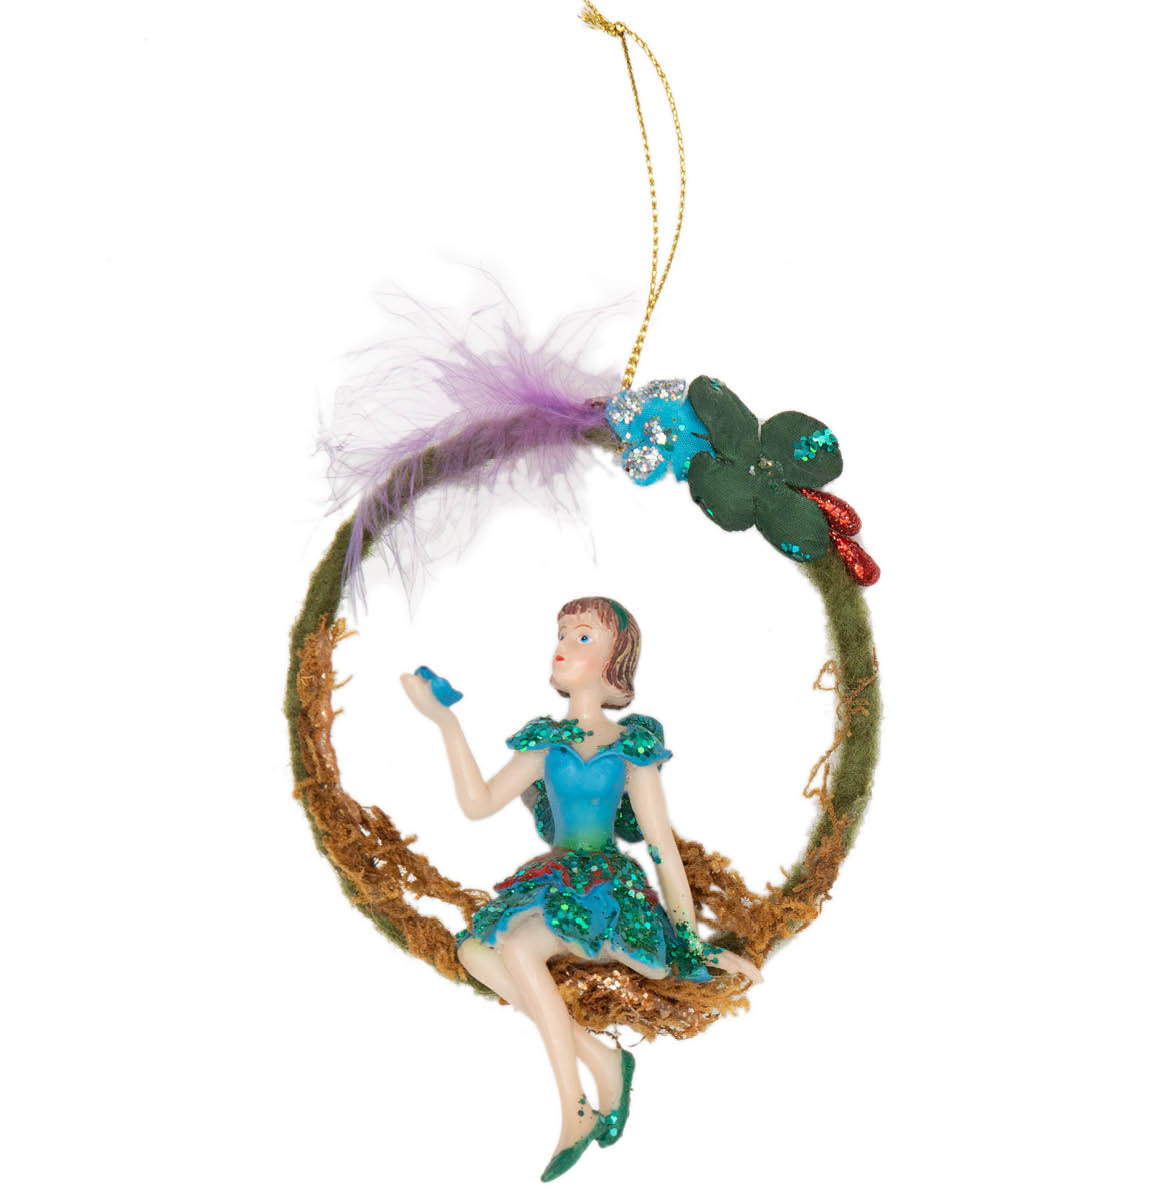 Fairy with Blue Bird Ornament